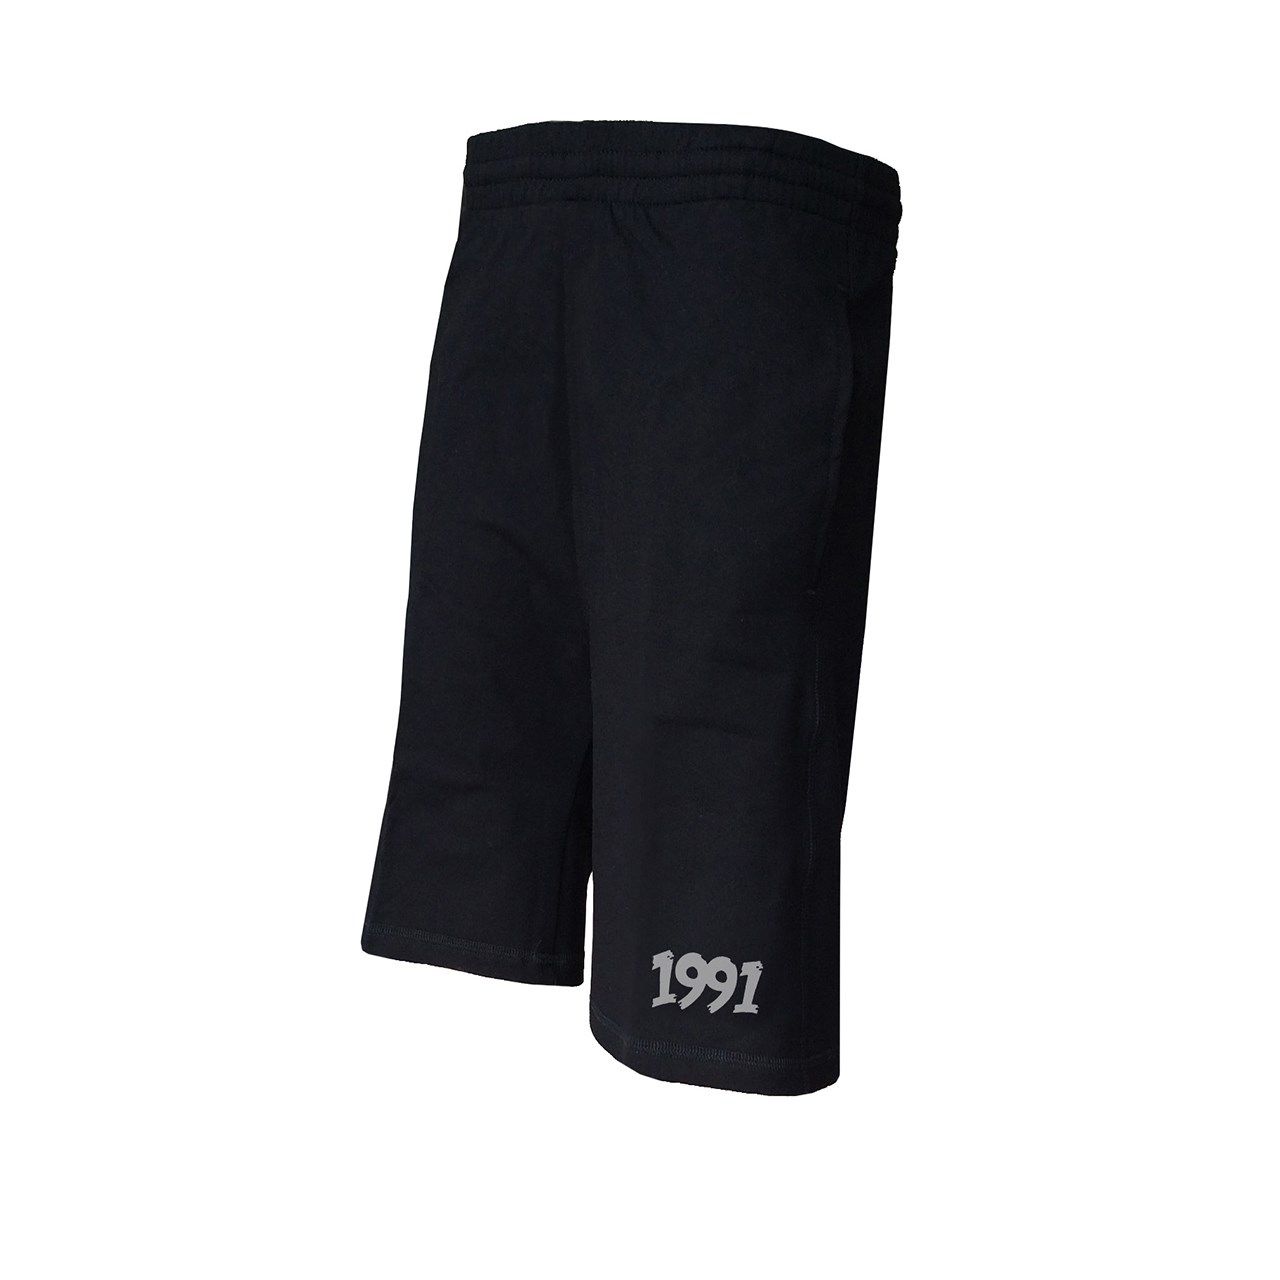 شلوارک ورزشی مردانه 1991 اس دبلیو مدل shorts Simplex Black